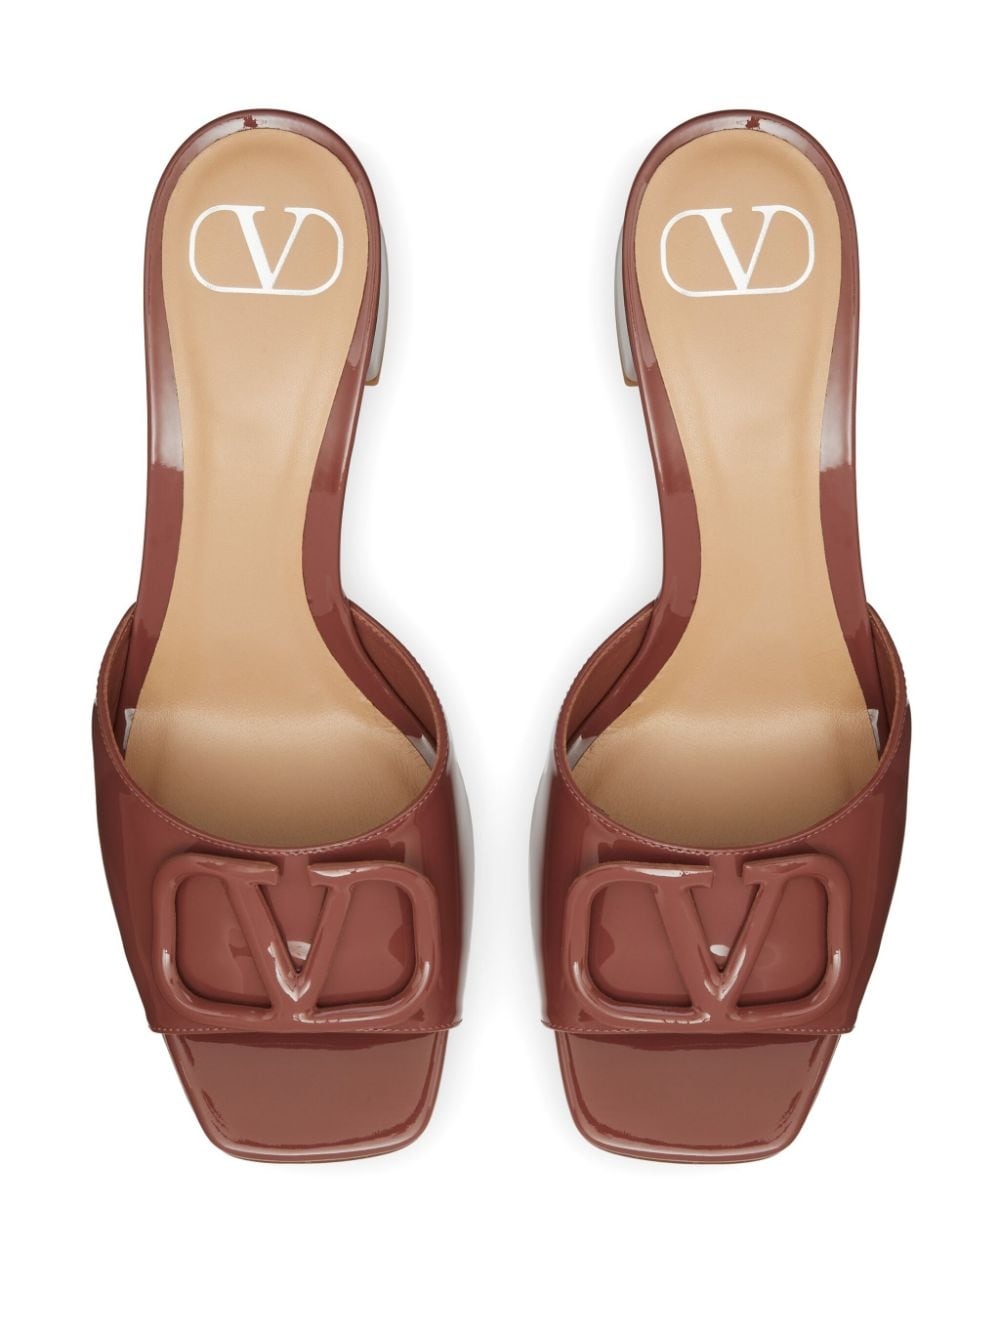 VLogo Signature 60mm patent sandals - 4